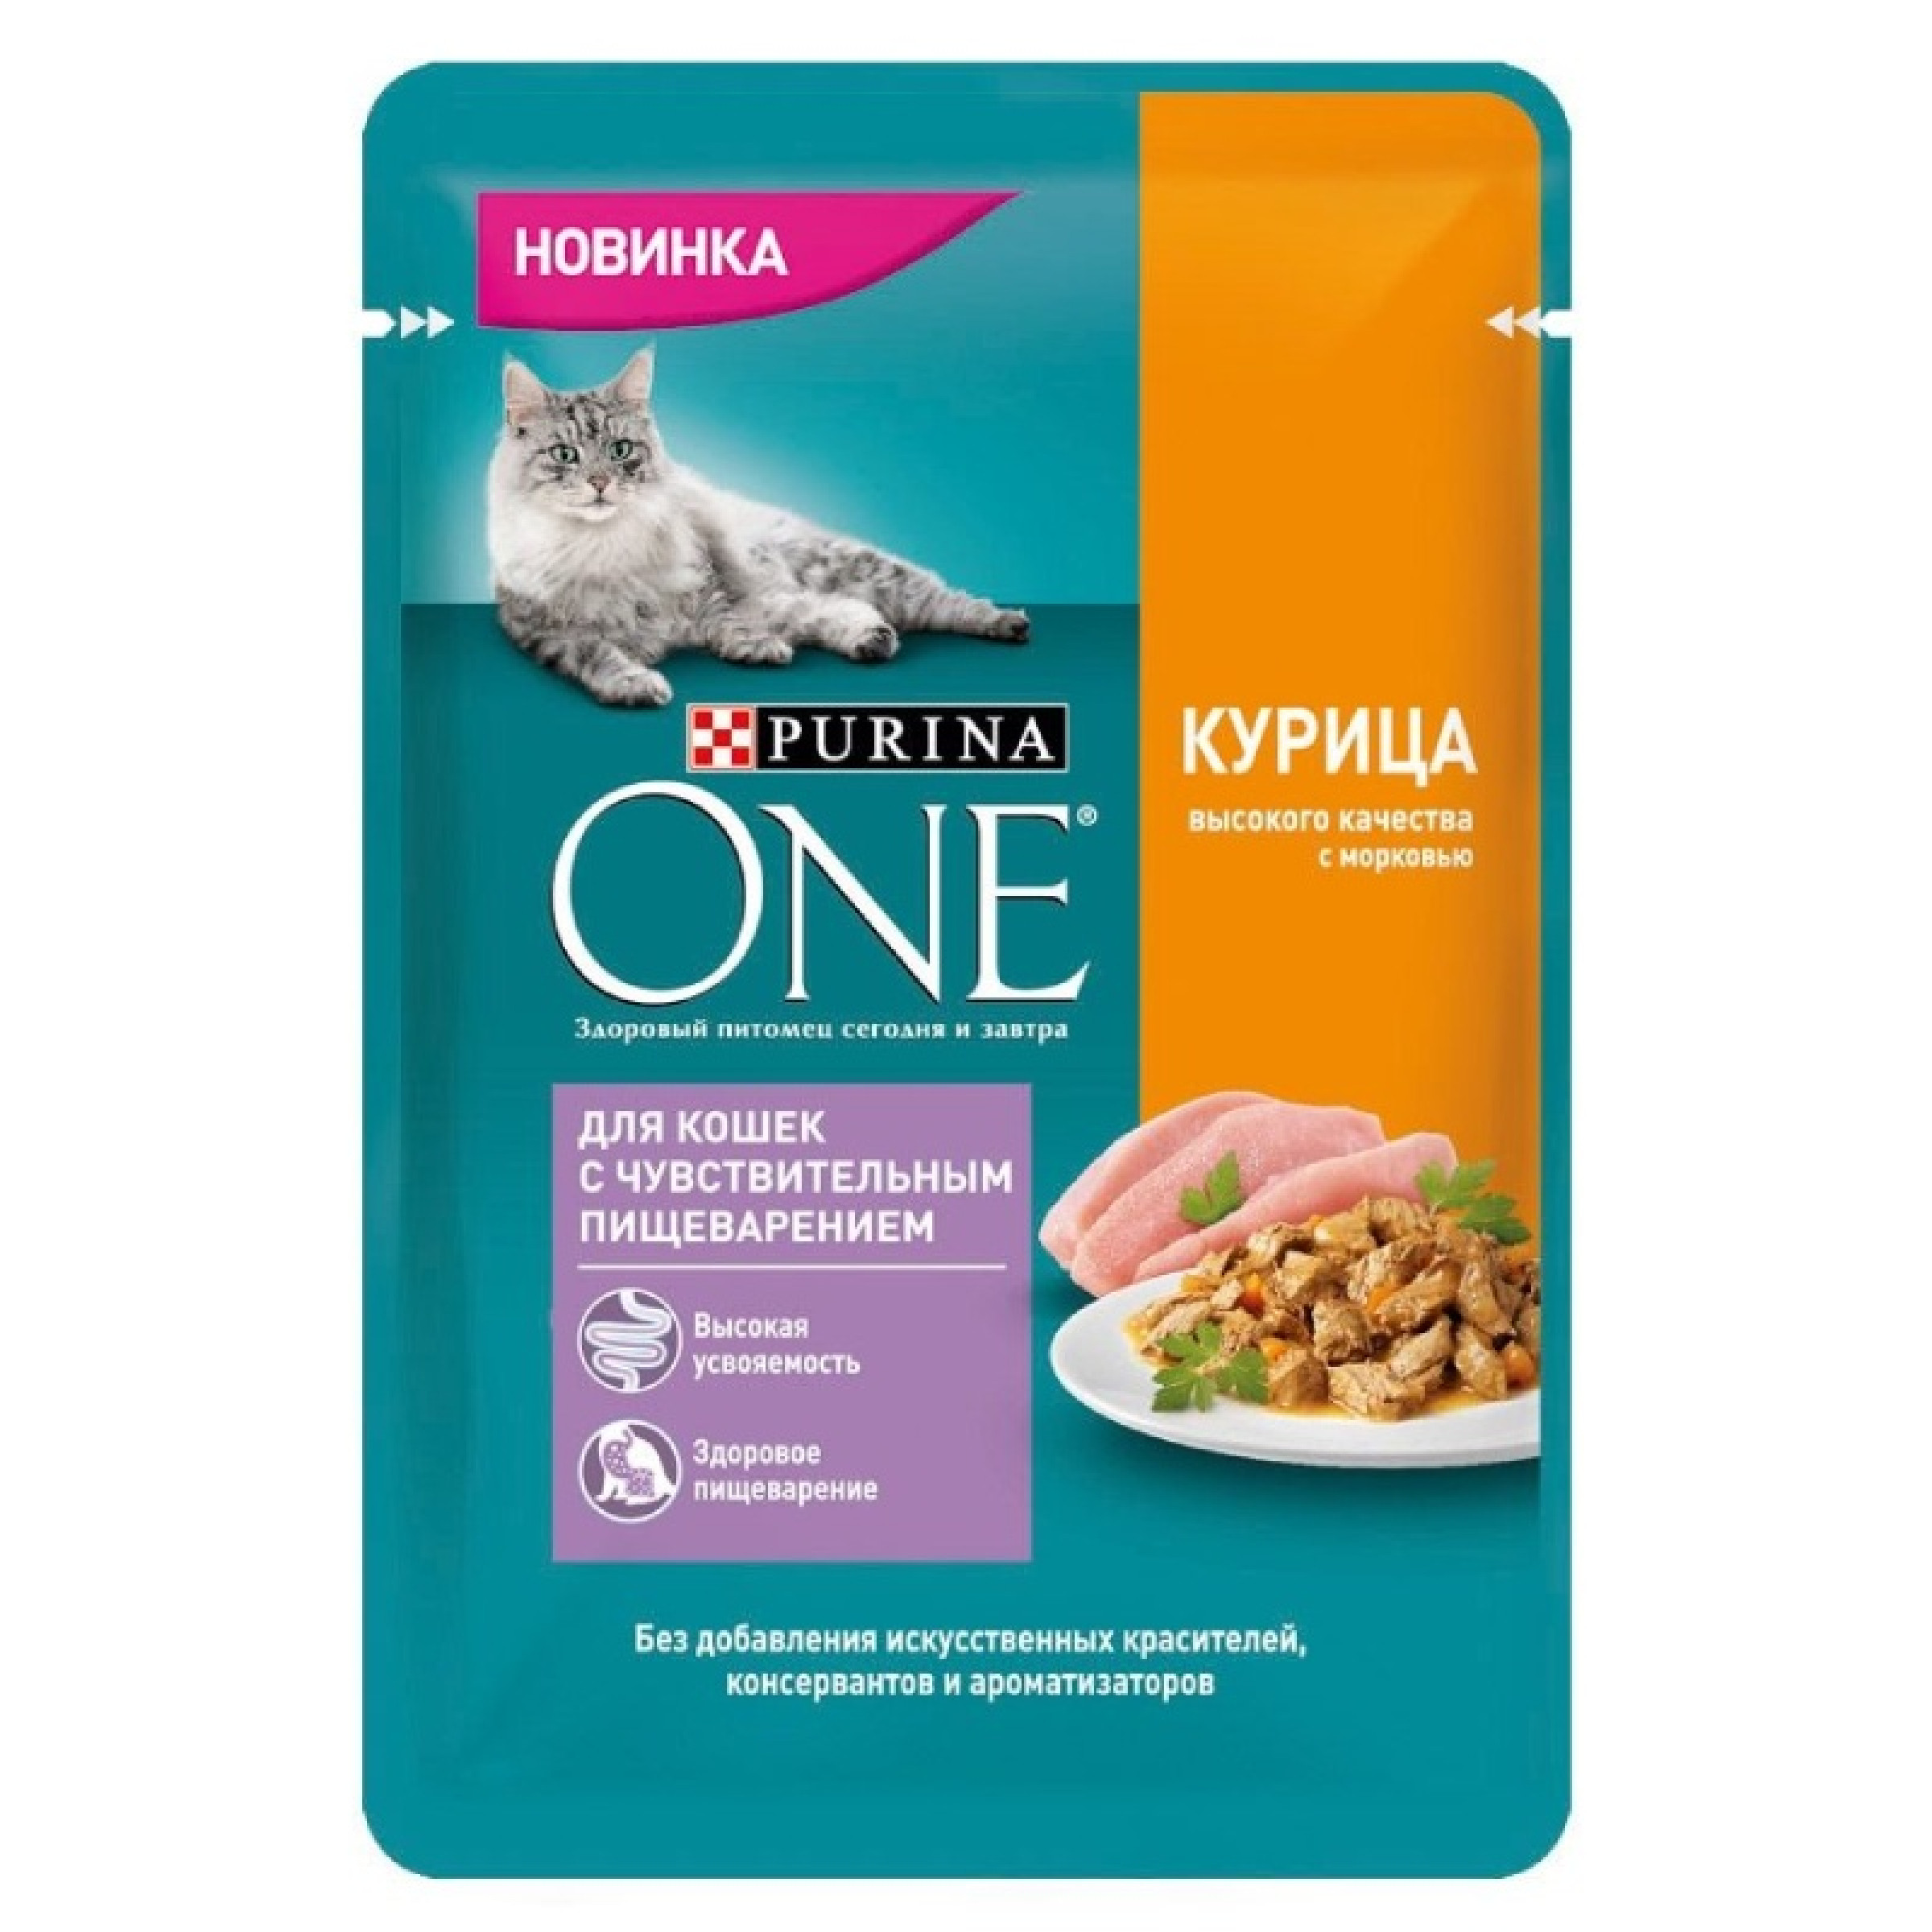 Влажный корм Purina One для кошек с чувствительным пищеварением с курицей высокого качества и морковью, 75 г